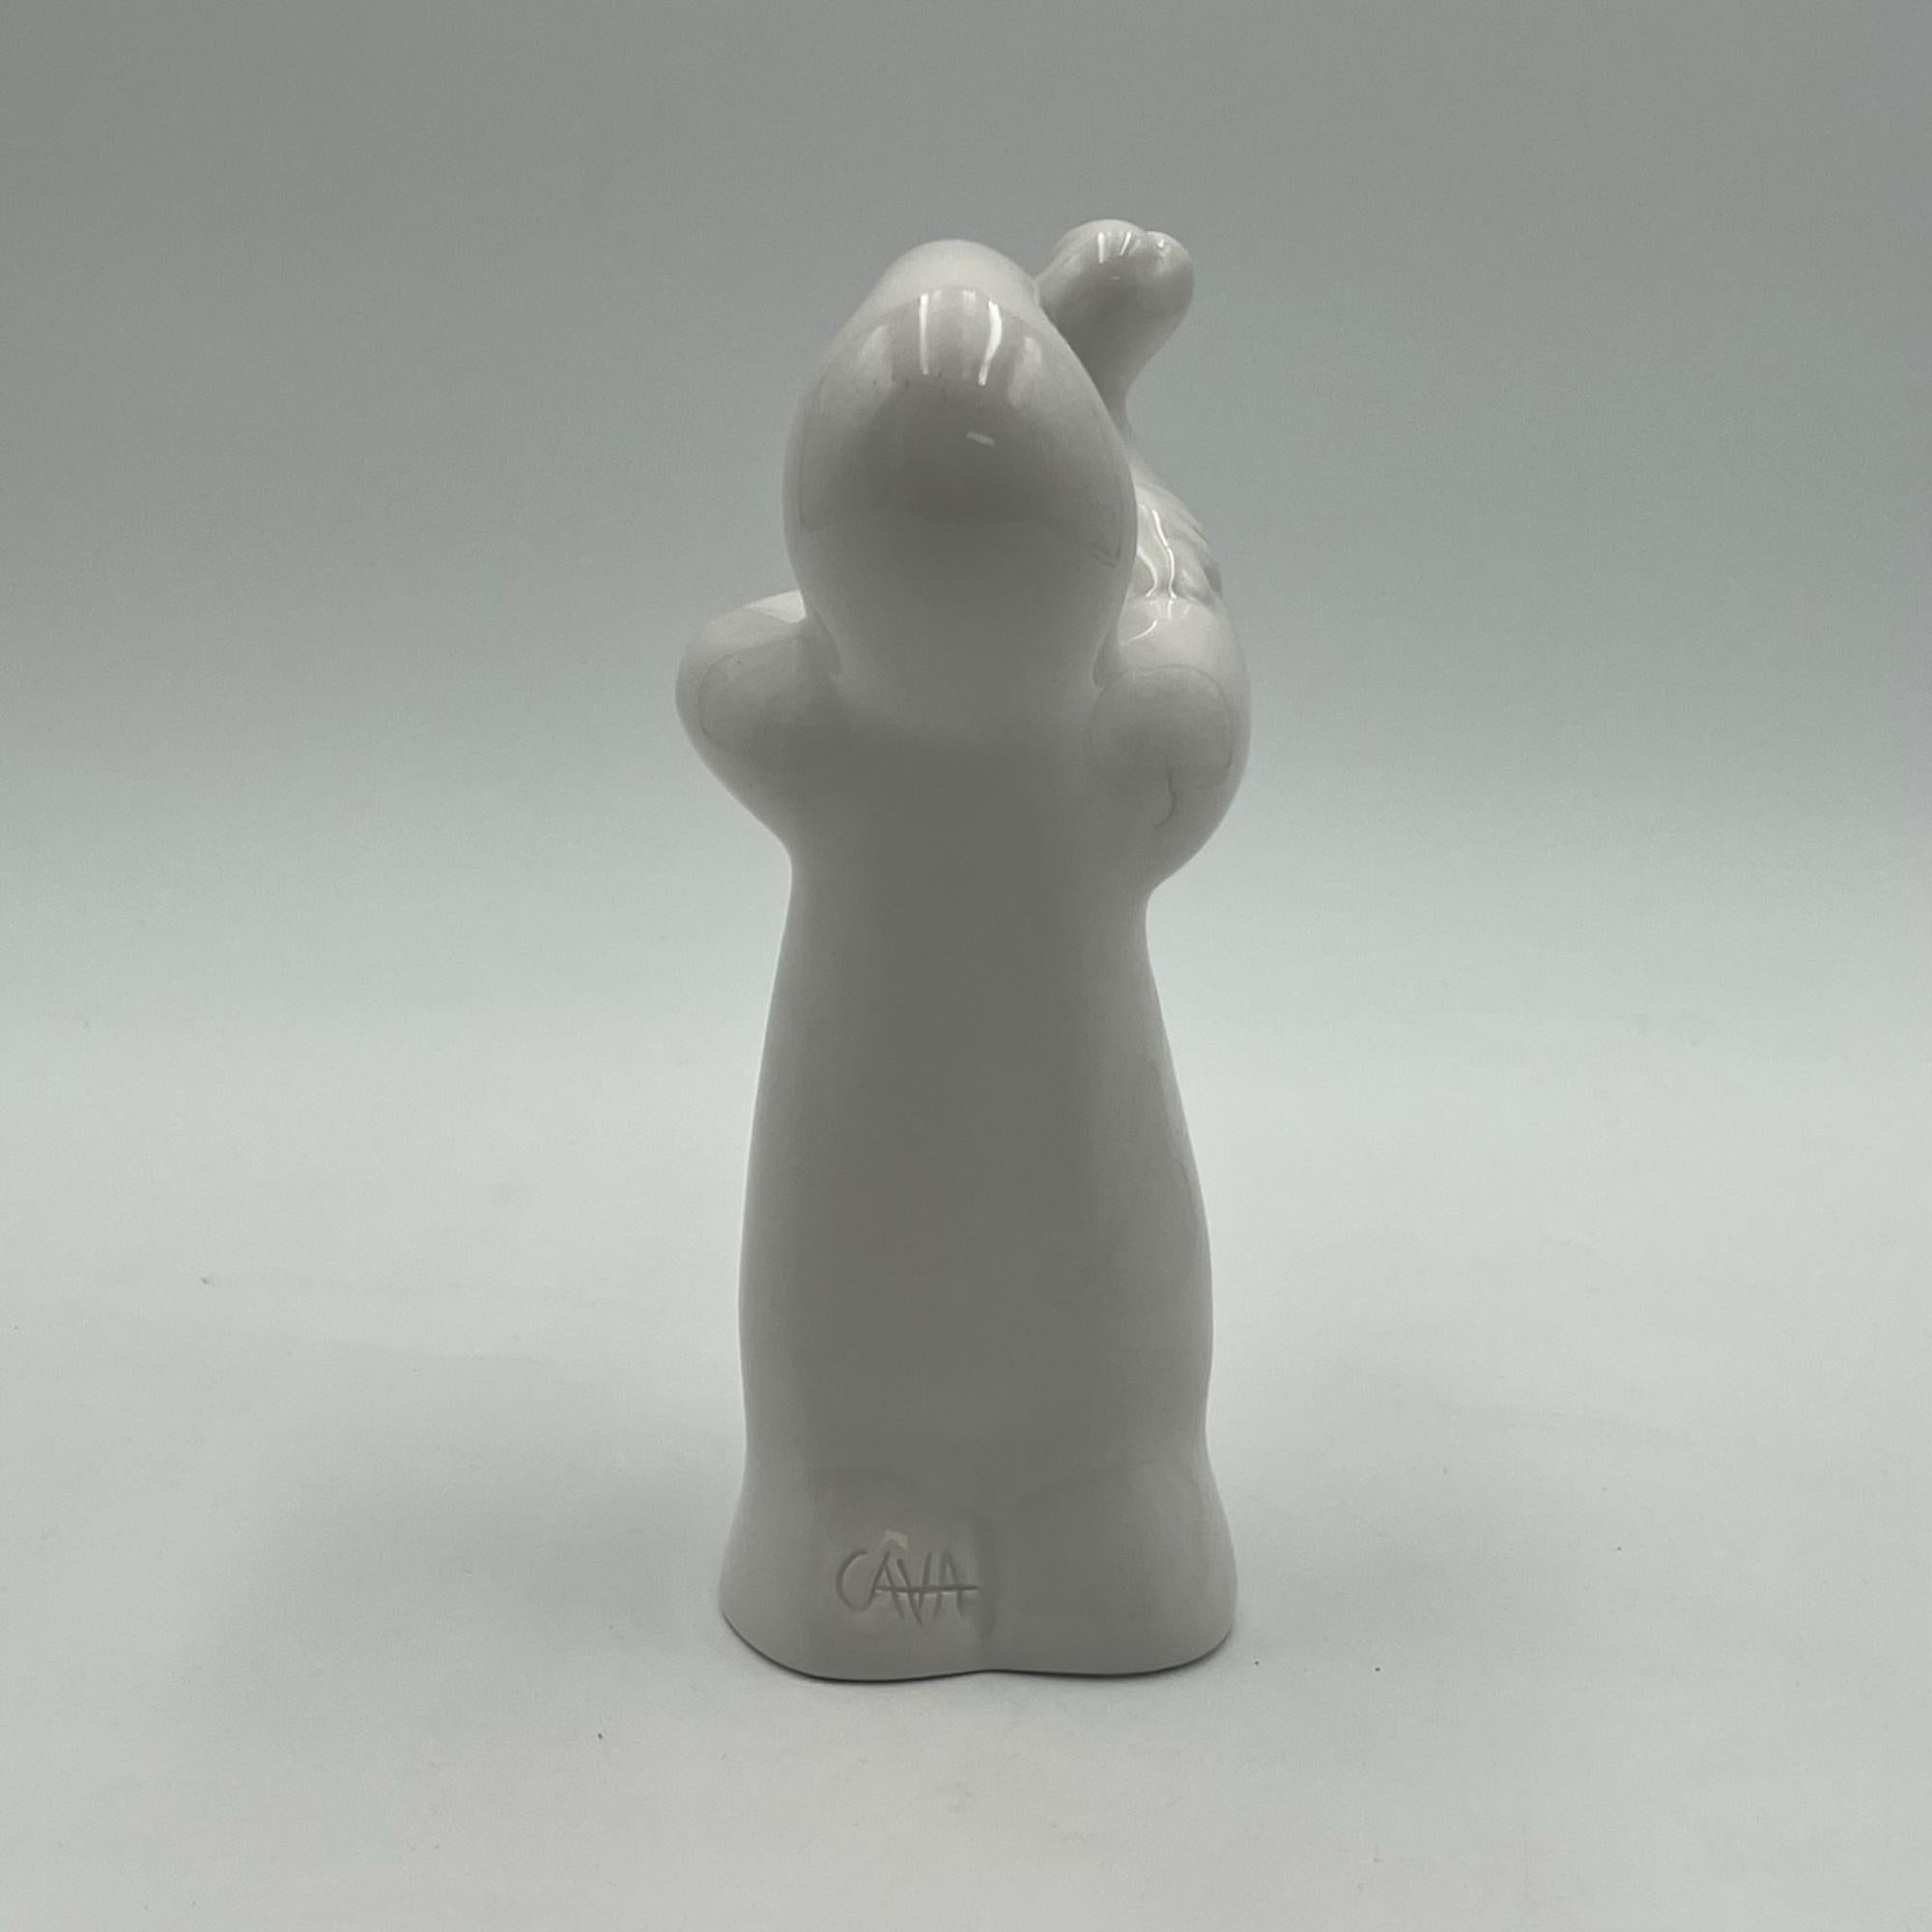 Italian La Linea ‘Finger’ Osvaldo Cavandoli - Vintage Ceramic Figurine from the 60s